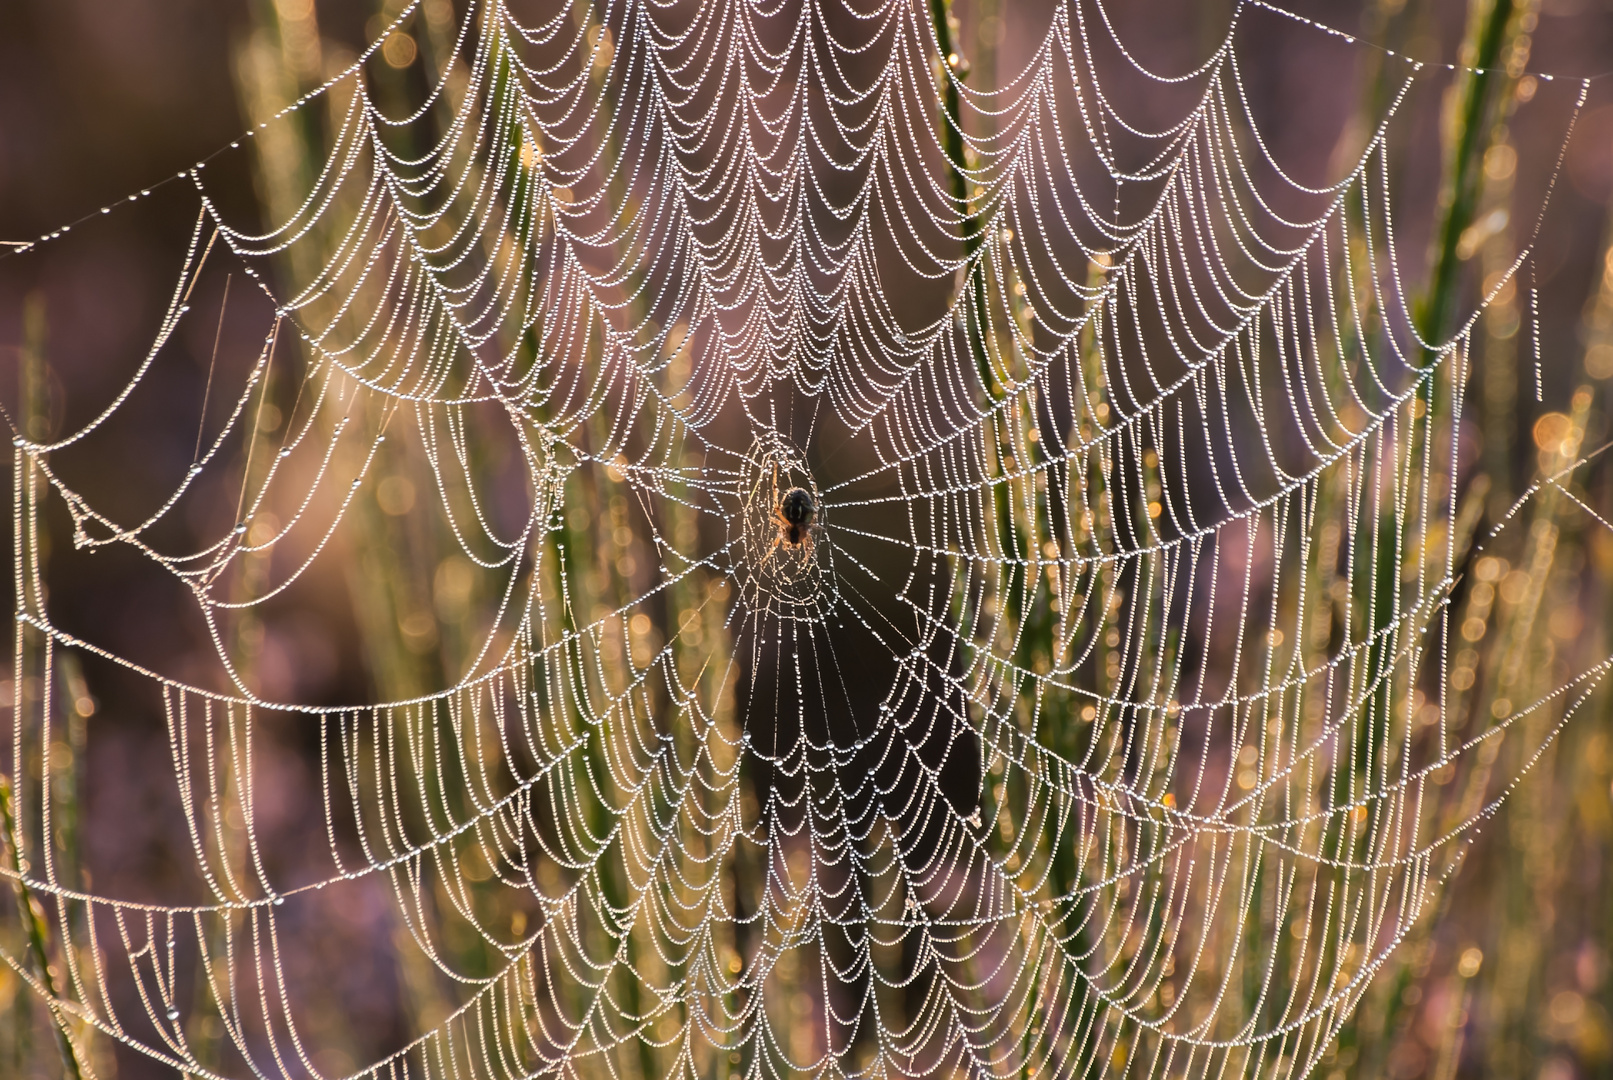 "Die Spinne im Netz"